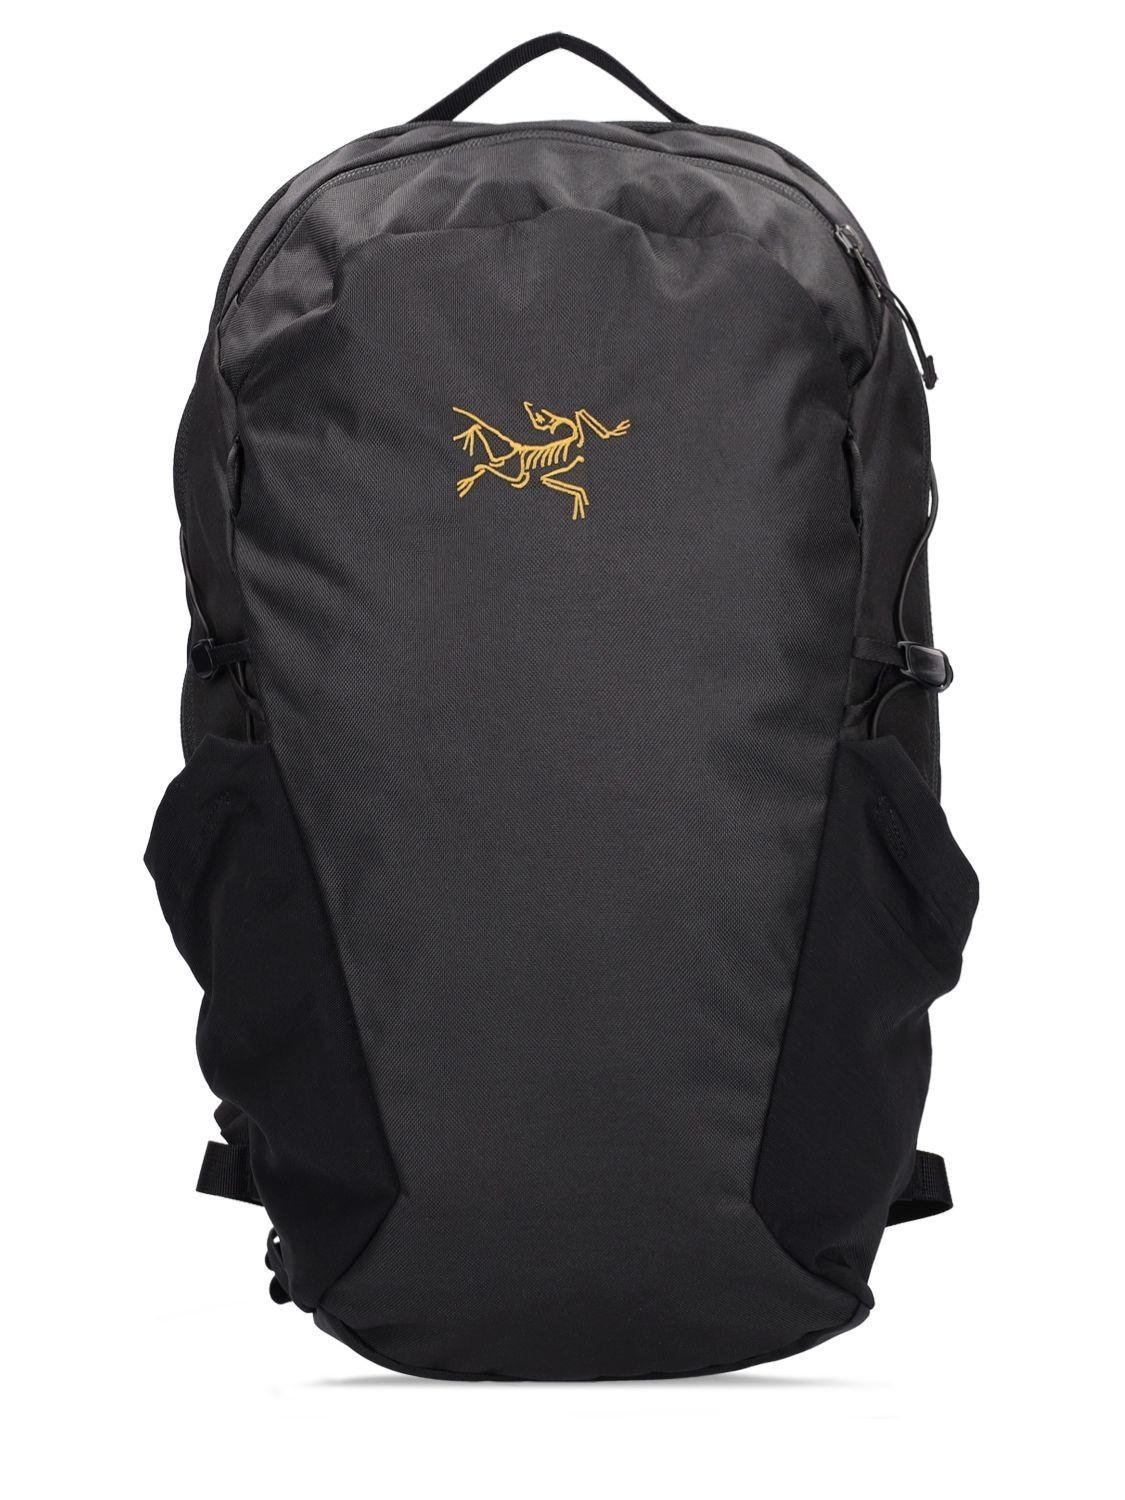 Arc'teryx 16l Mantis Backpack in Black for Men